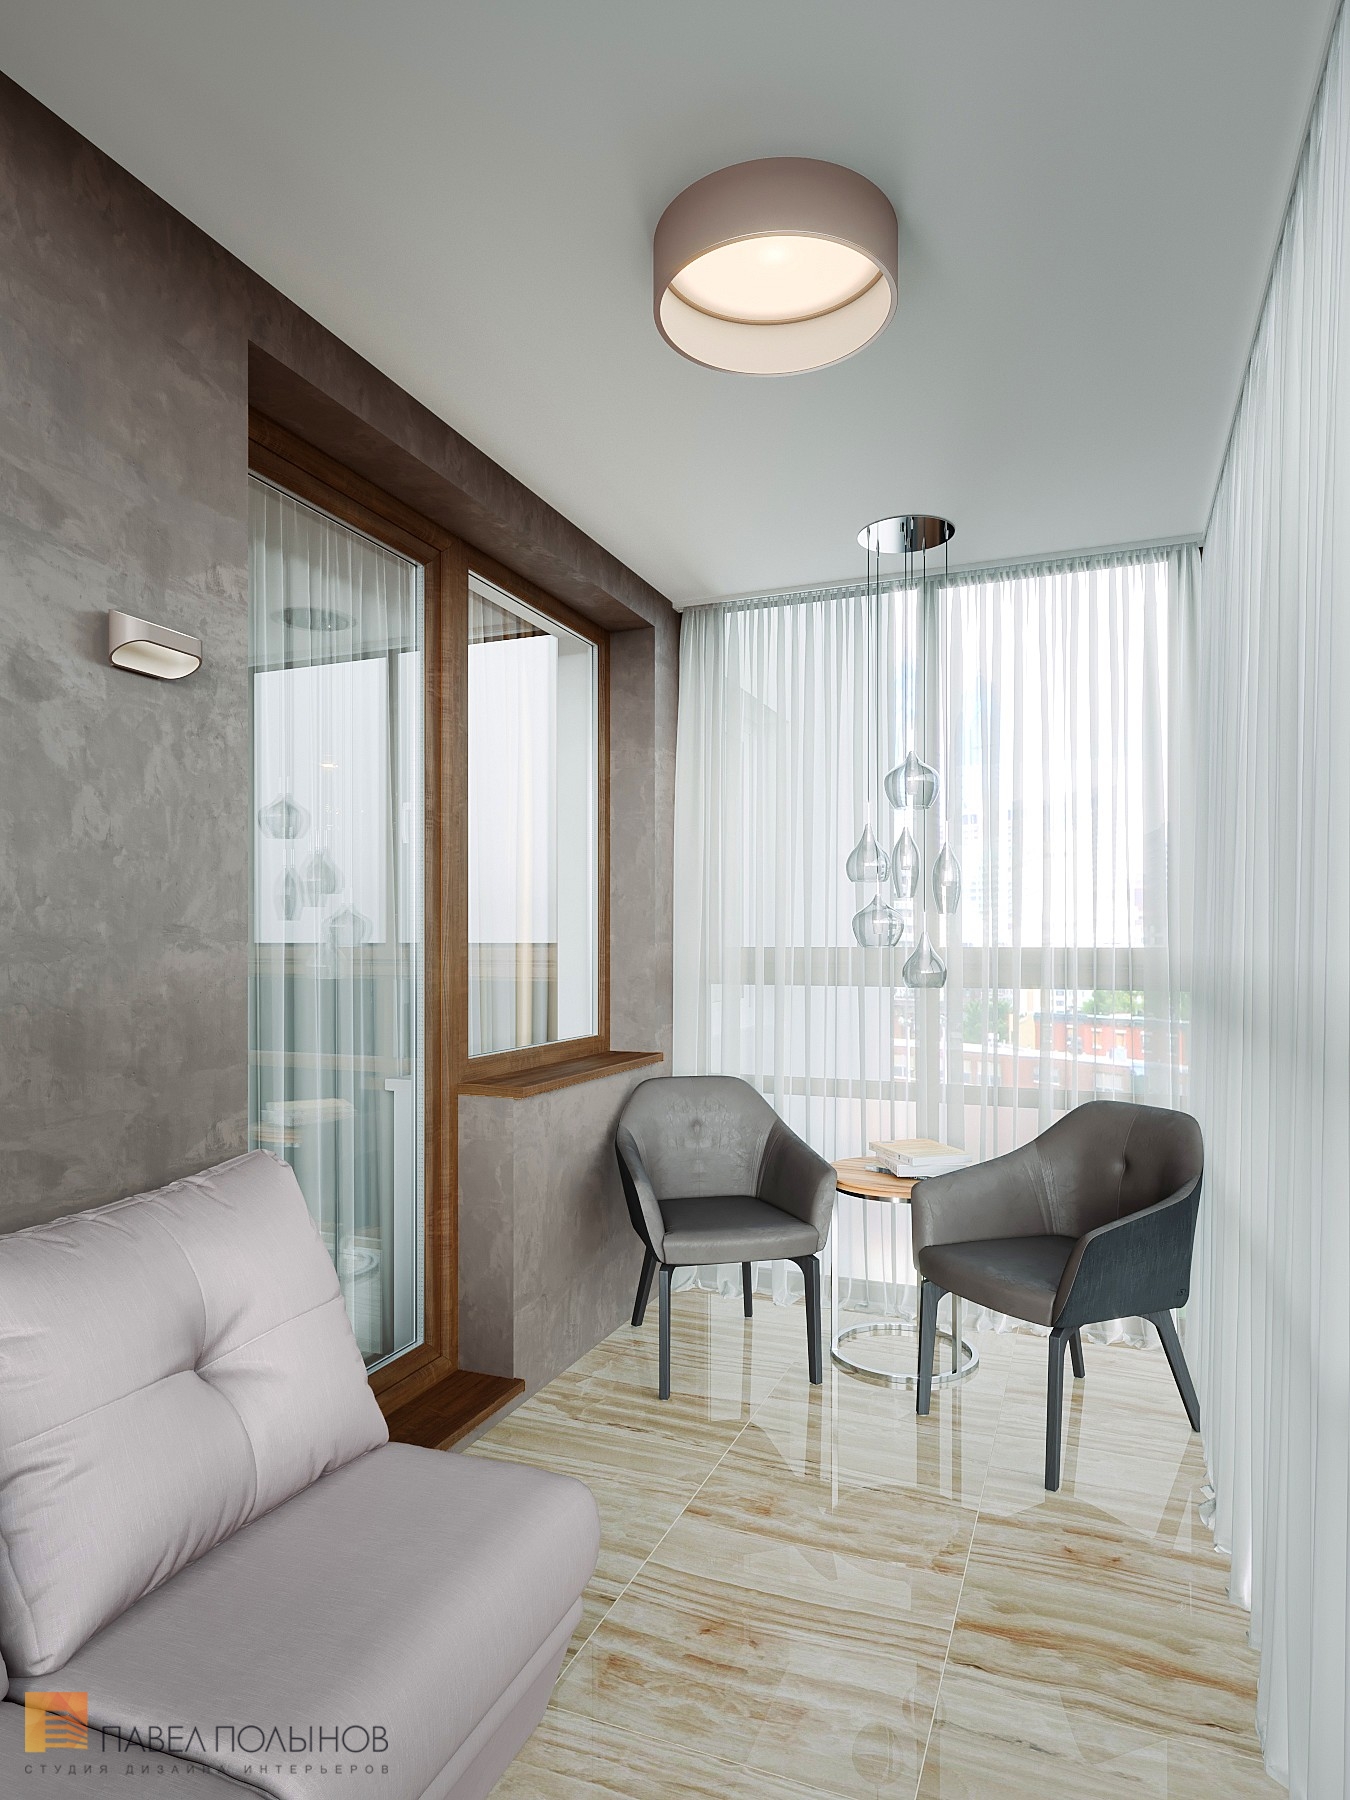 Фото балкон из проекта «Интерьер квартиры с современном стиле с элементами скандинавского, ЖК «Skandi Klubb», 77 кв.м.»